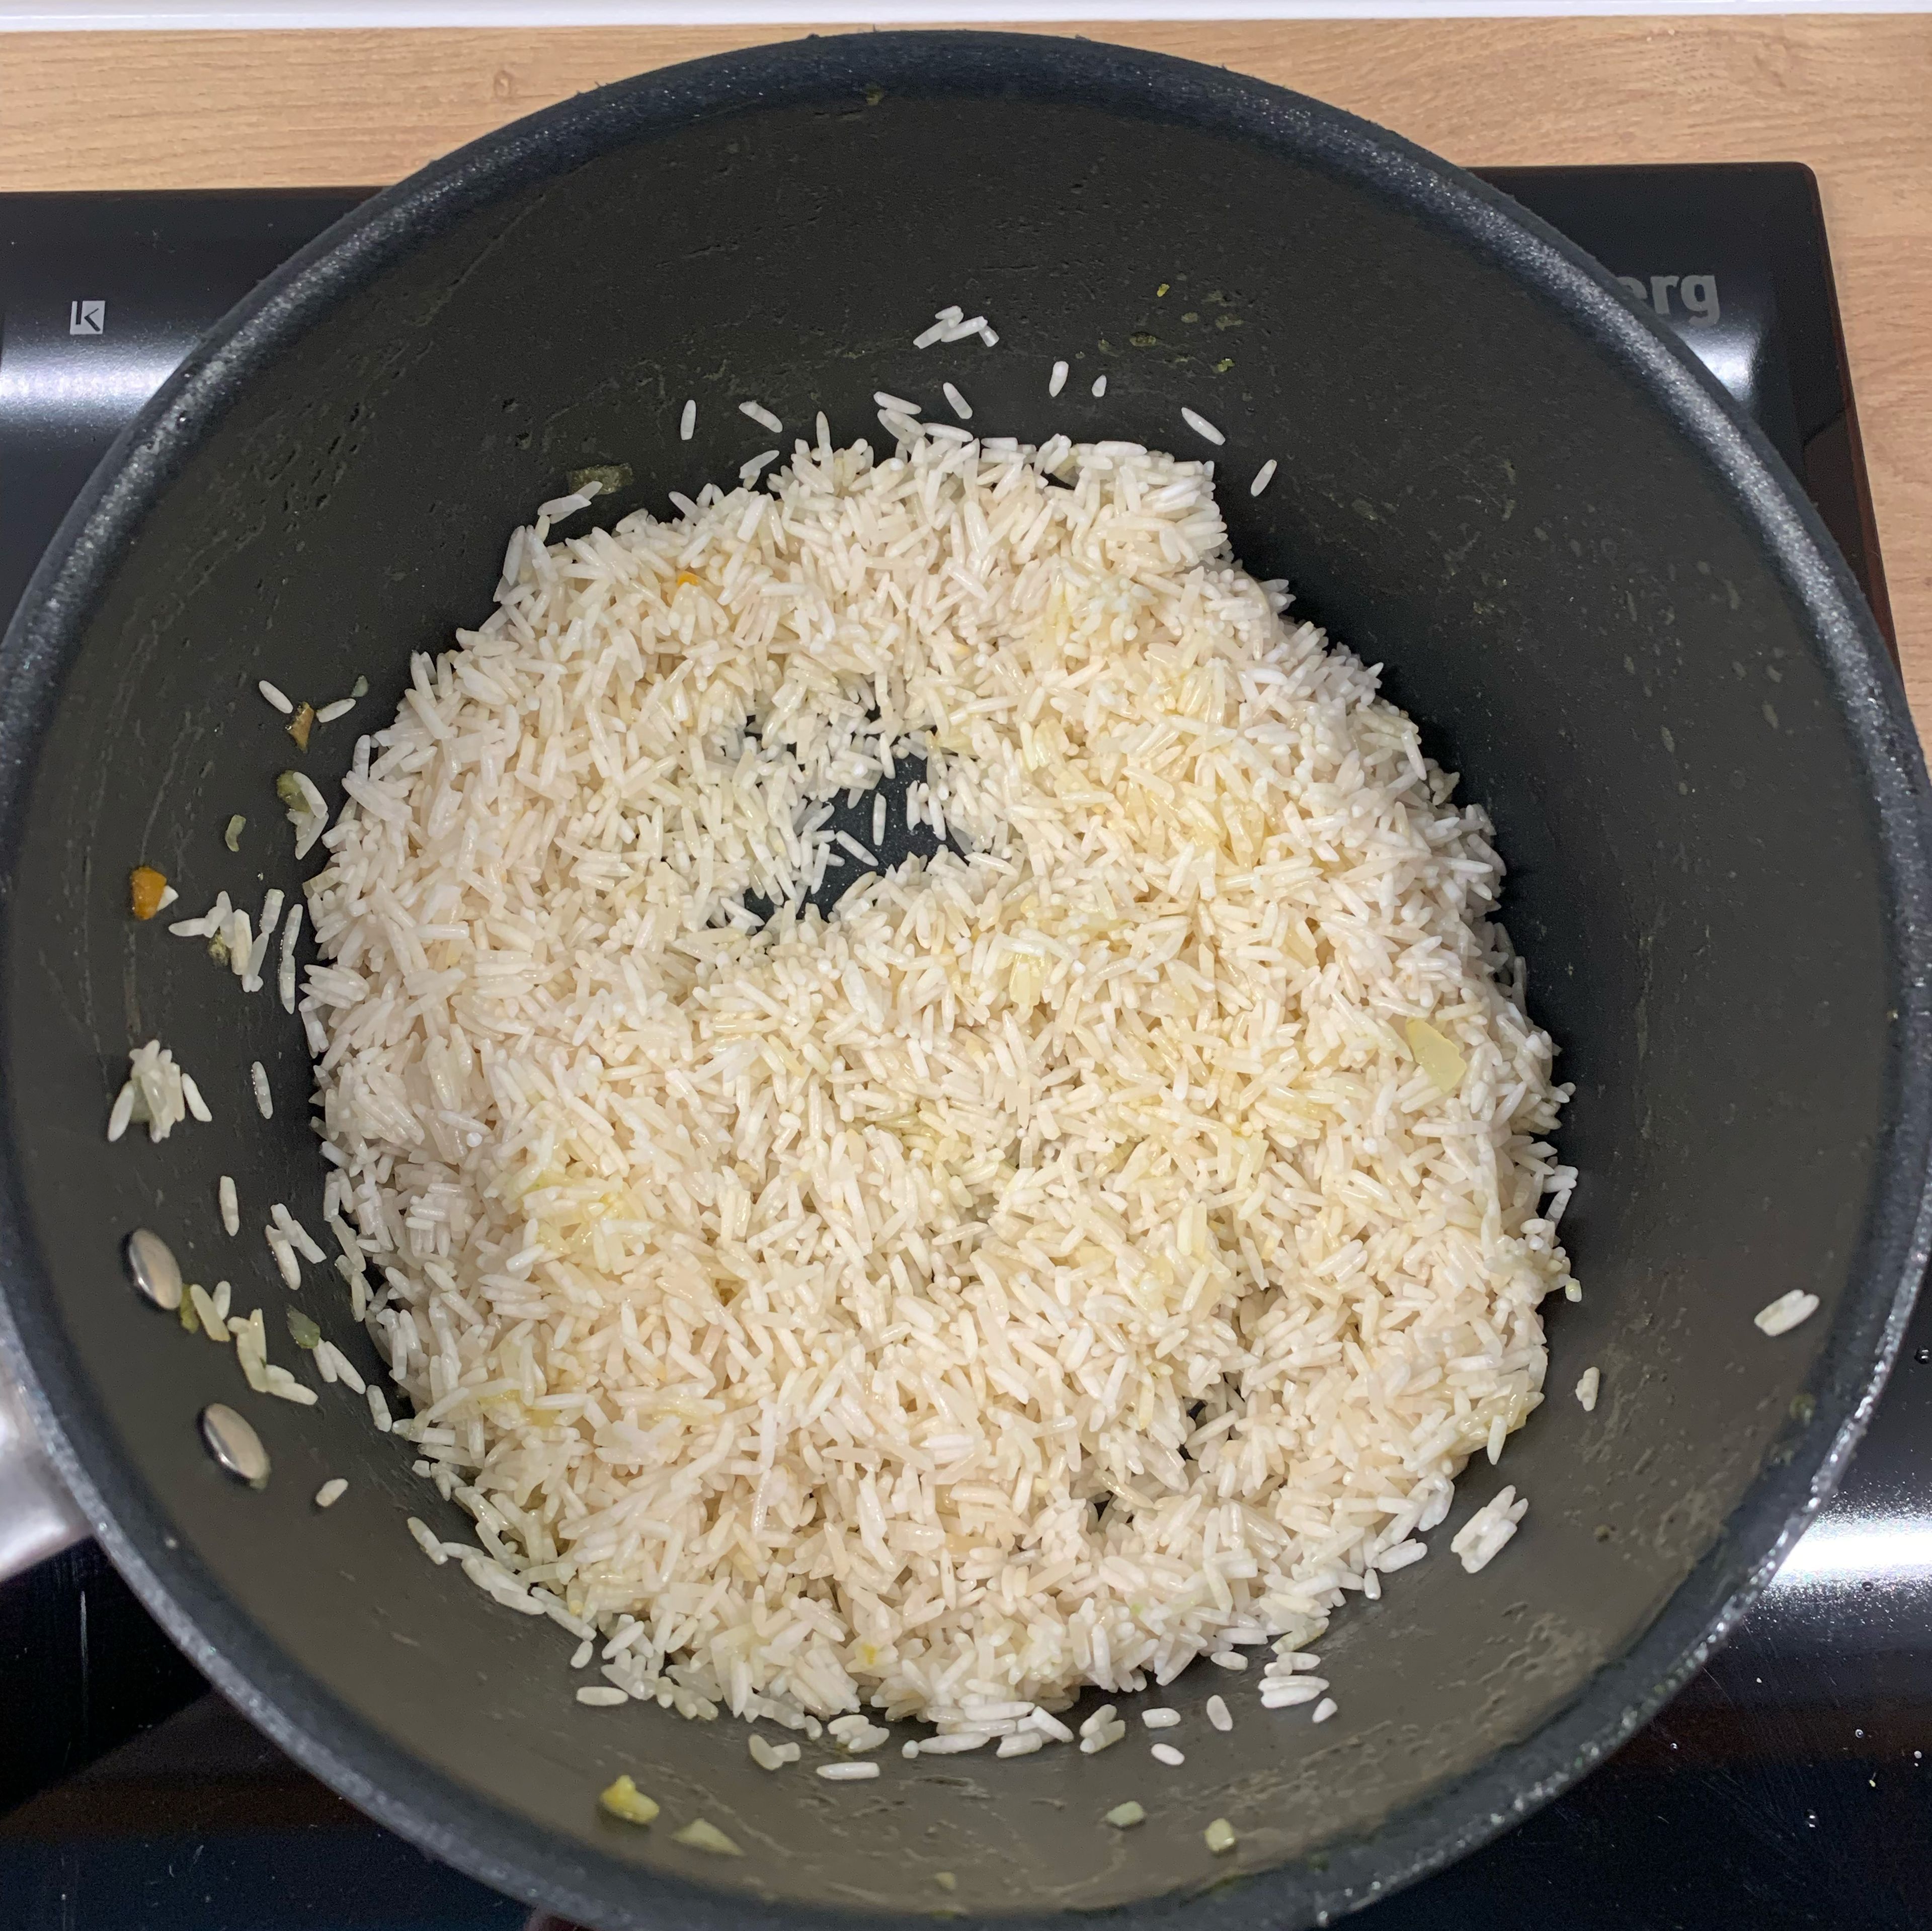 Den Reis waschen und In dem selben Topf etwas Öl erhitzen. Den Reis kurz darin anbraten und die Brühe von dem Gemüse mit Wasser verlängern so das es die eineinhalbfache Menge vom Reis ergibt. Den Reis damit ablöschen. Den Reis nun köcheln lassen